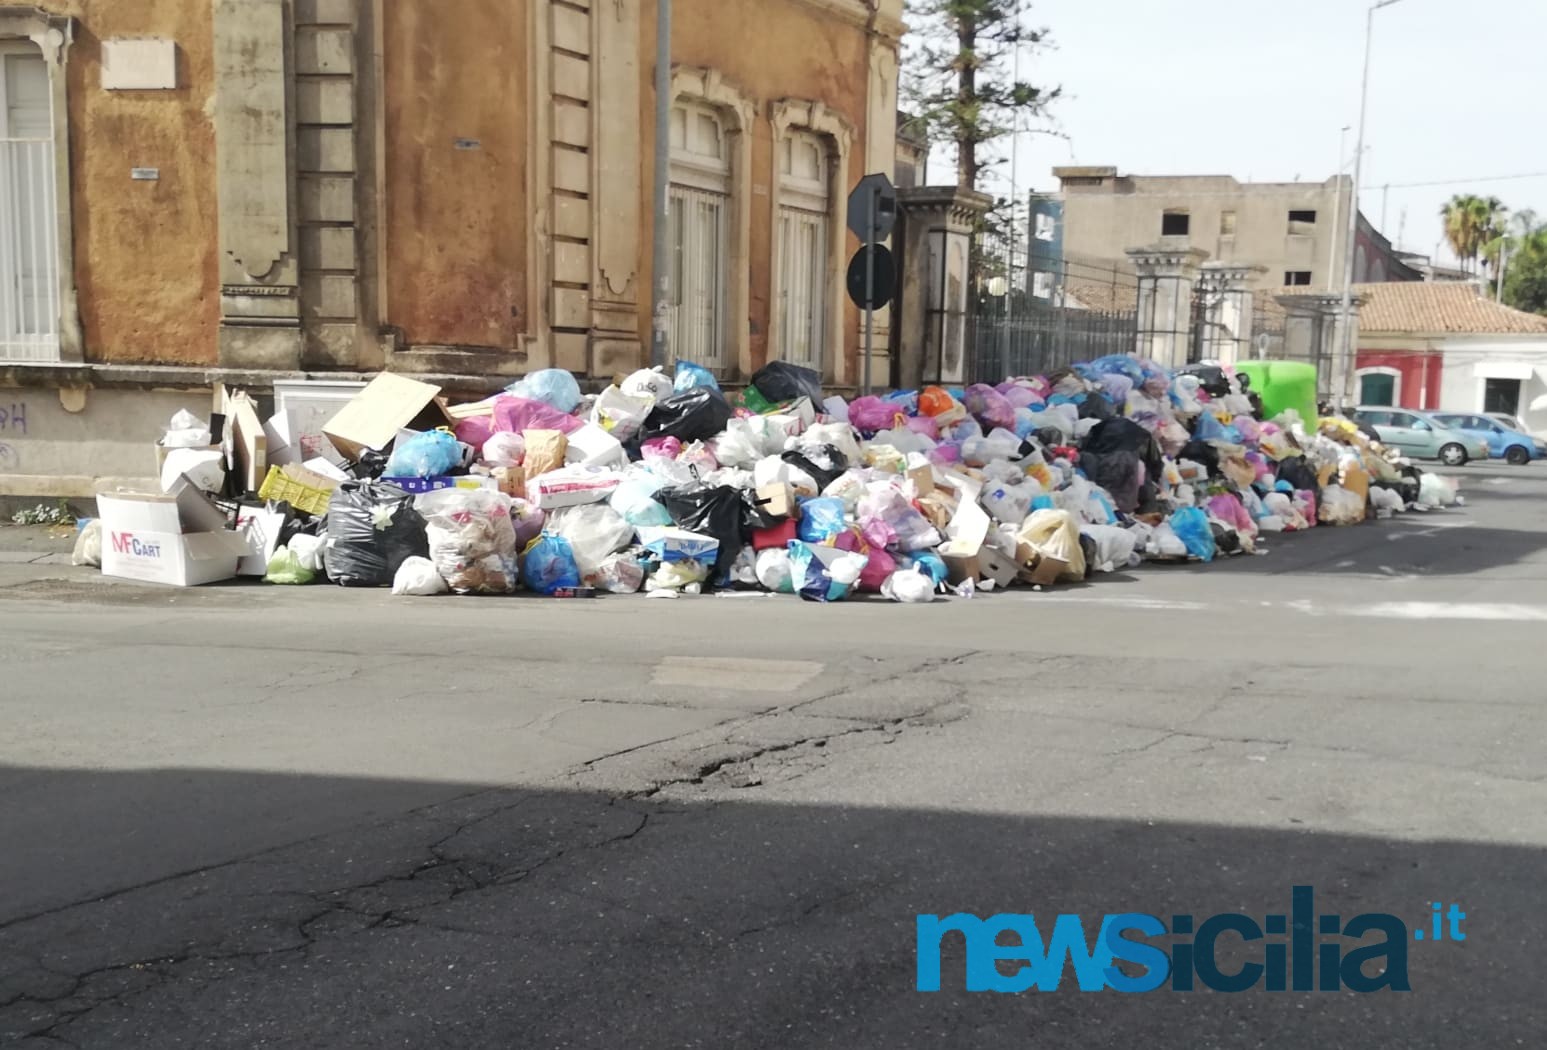 Emergenza rifiuti, la Regione porta l’immondizia di Catania a Palermo: firmato il decreto